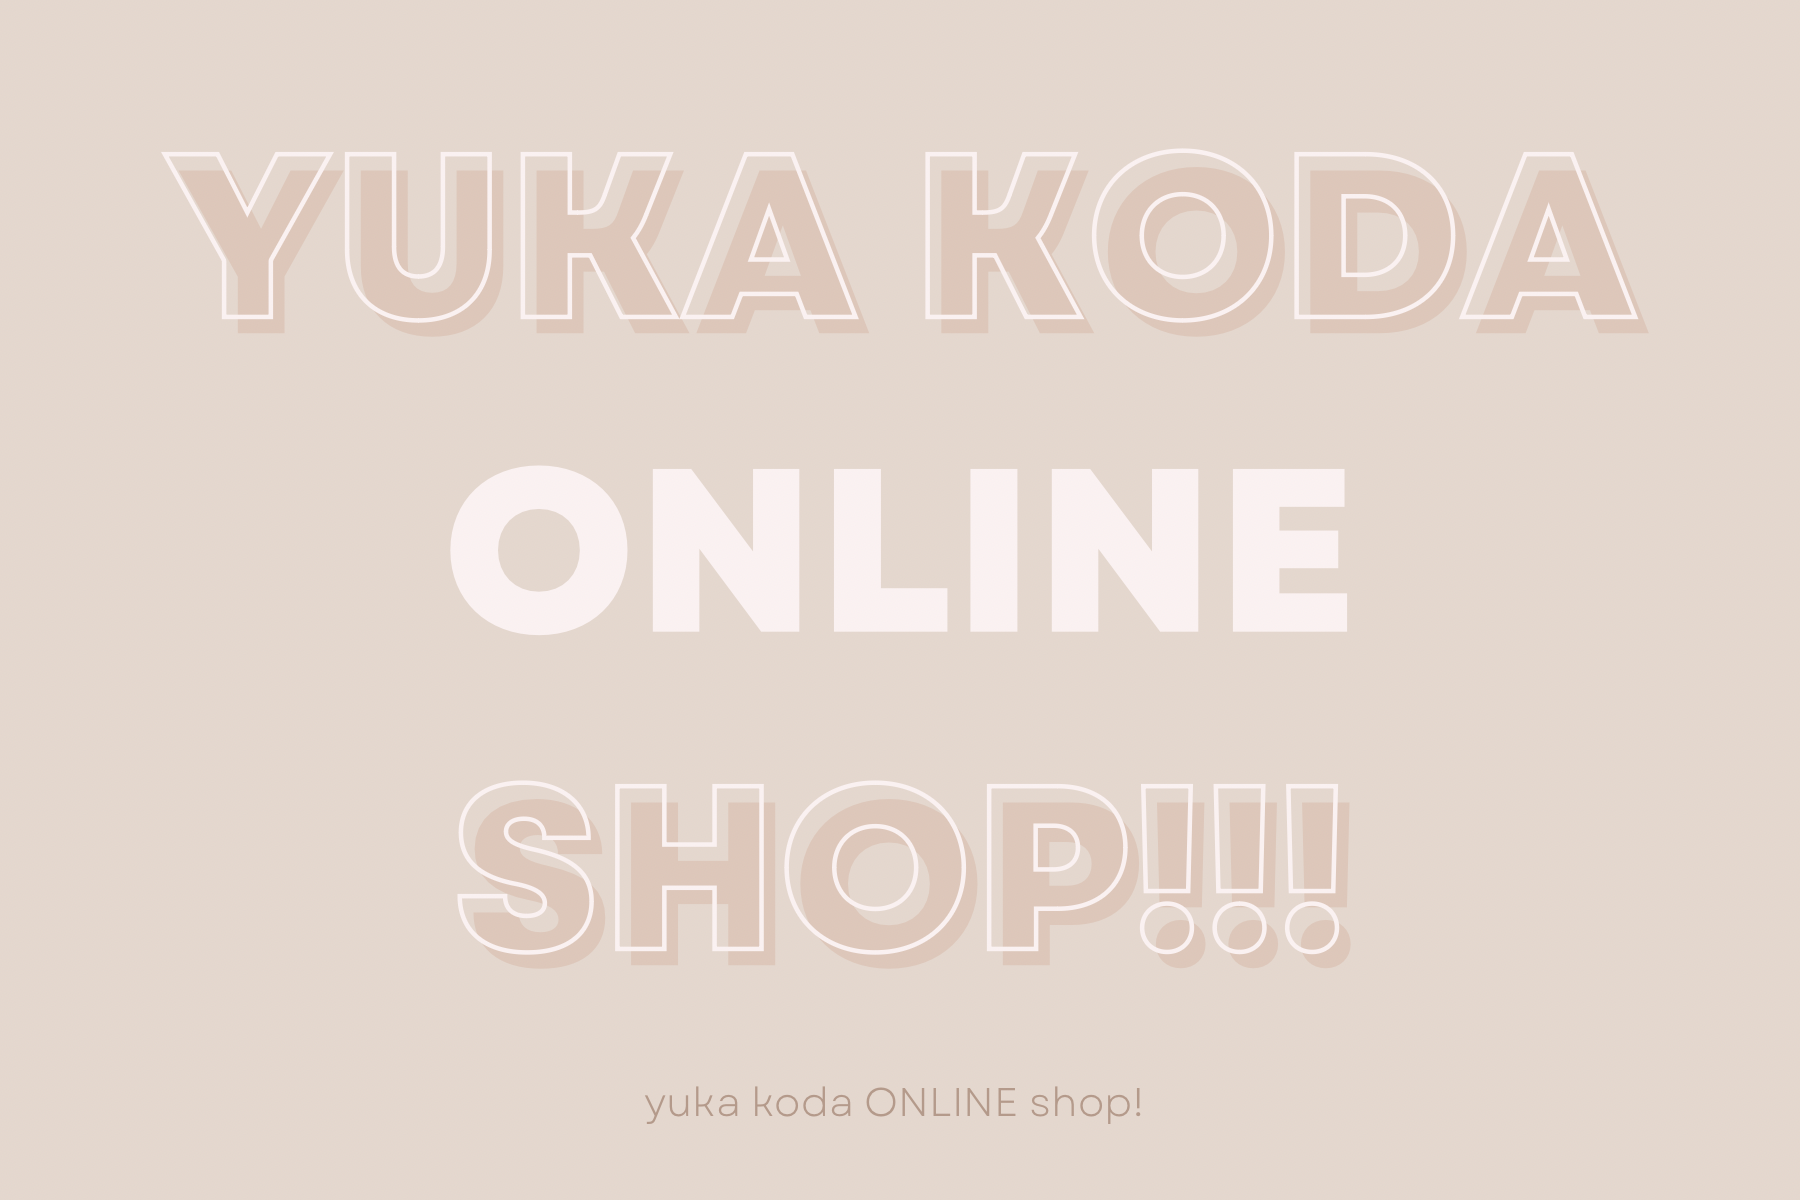 Yuka Koda ONLINE shop!